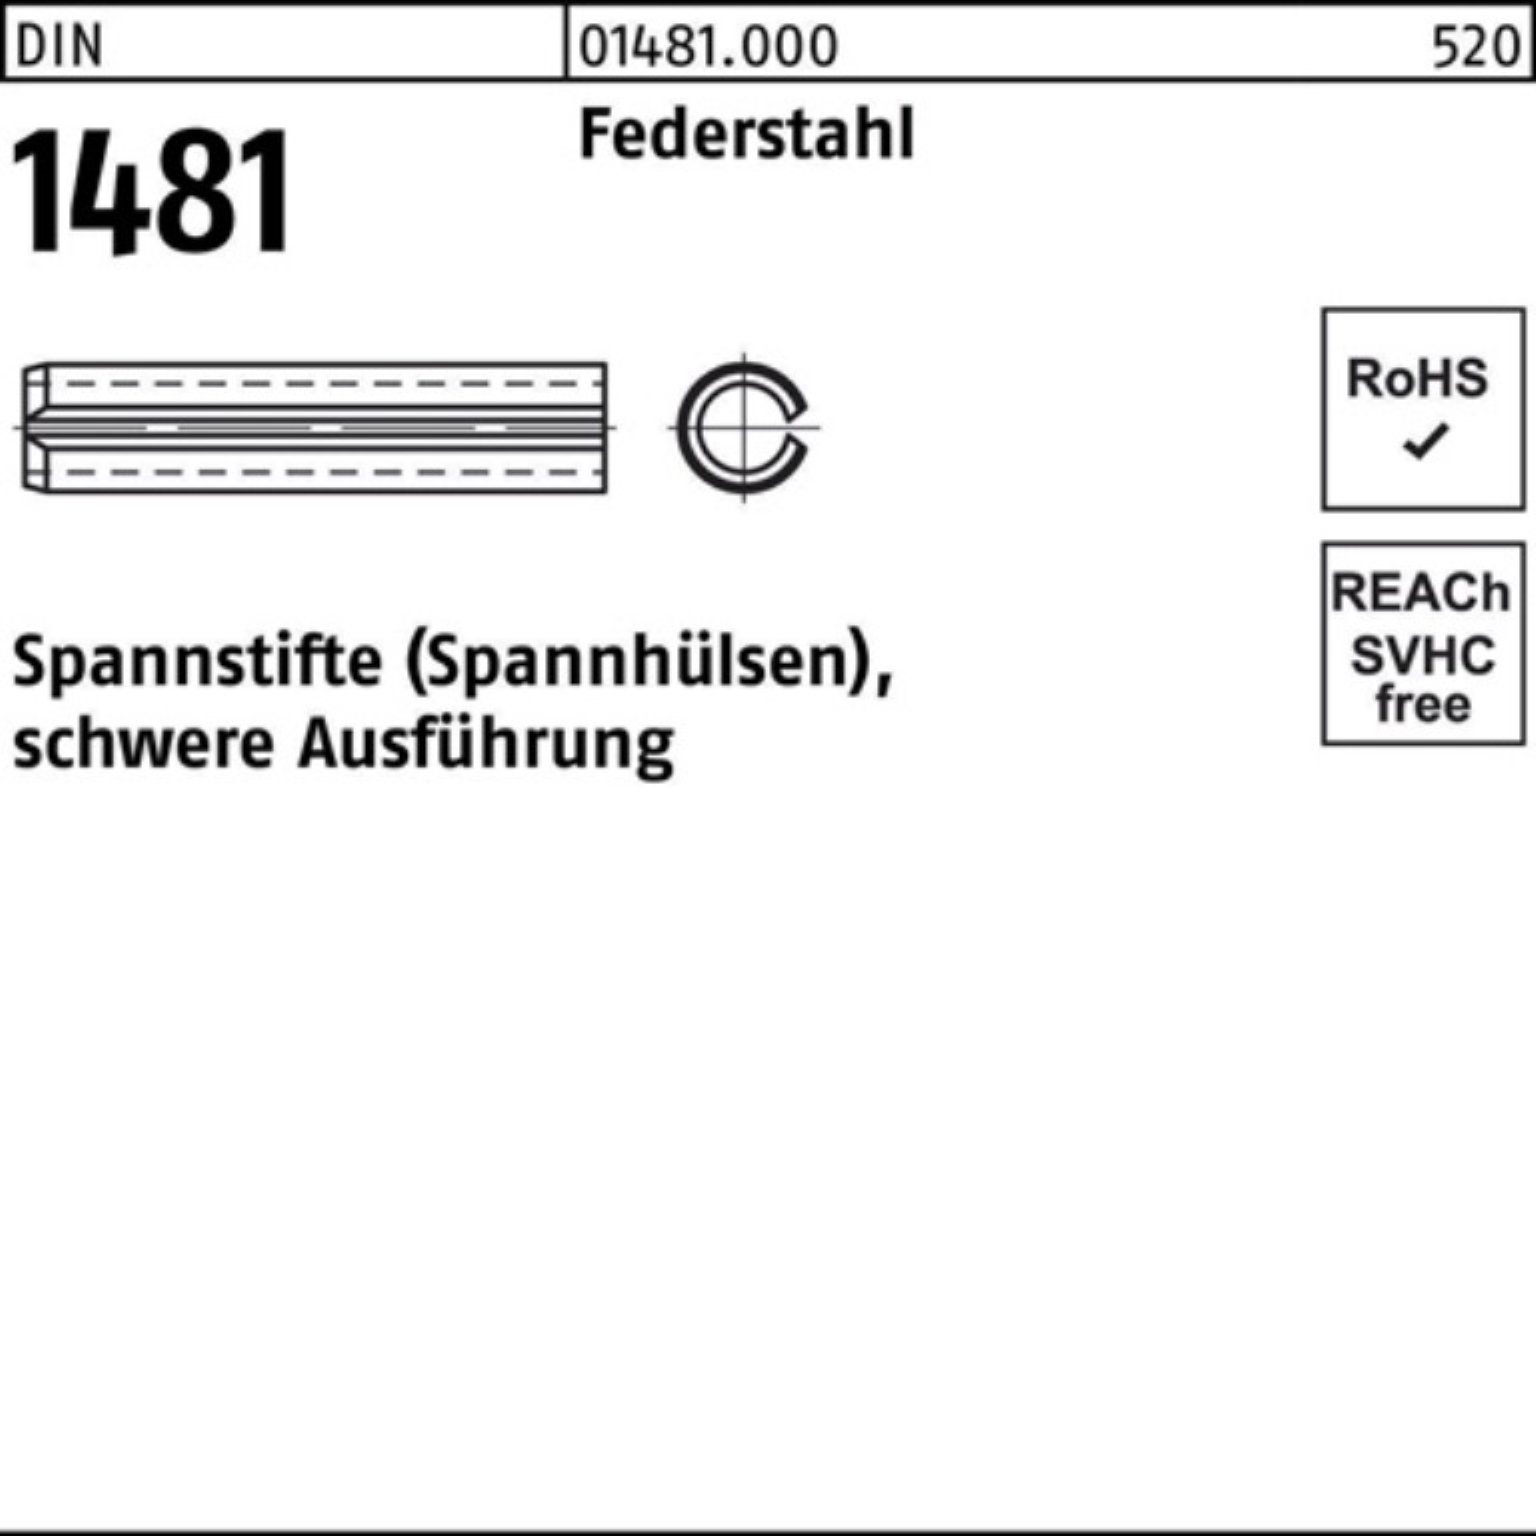 Reyher Spannstift 100er Pack Spannstift DIN 1481 10x 18 Federstahl schwere Ausführung 1